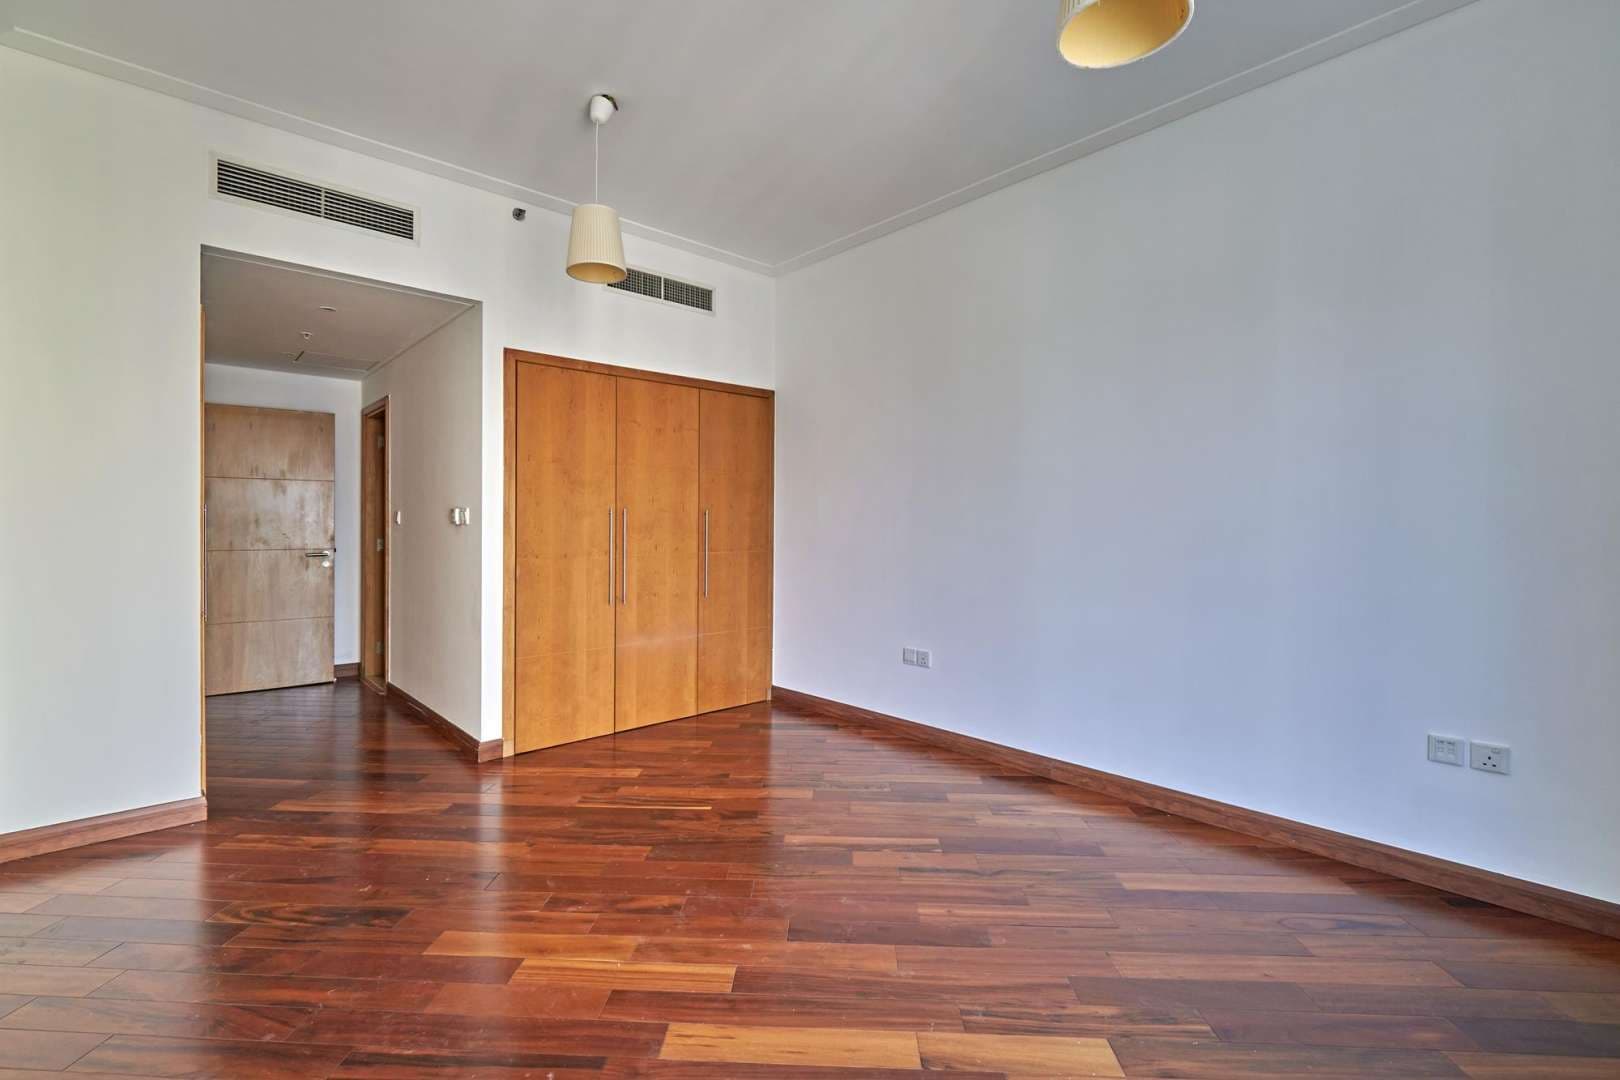 2 Bedroom Apartment For Rent Marina Promenade Lp05396 216c8fda1a5ff400.jpg